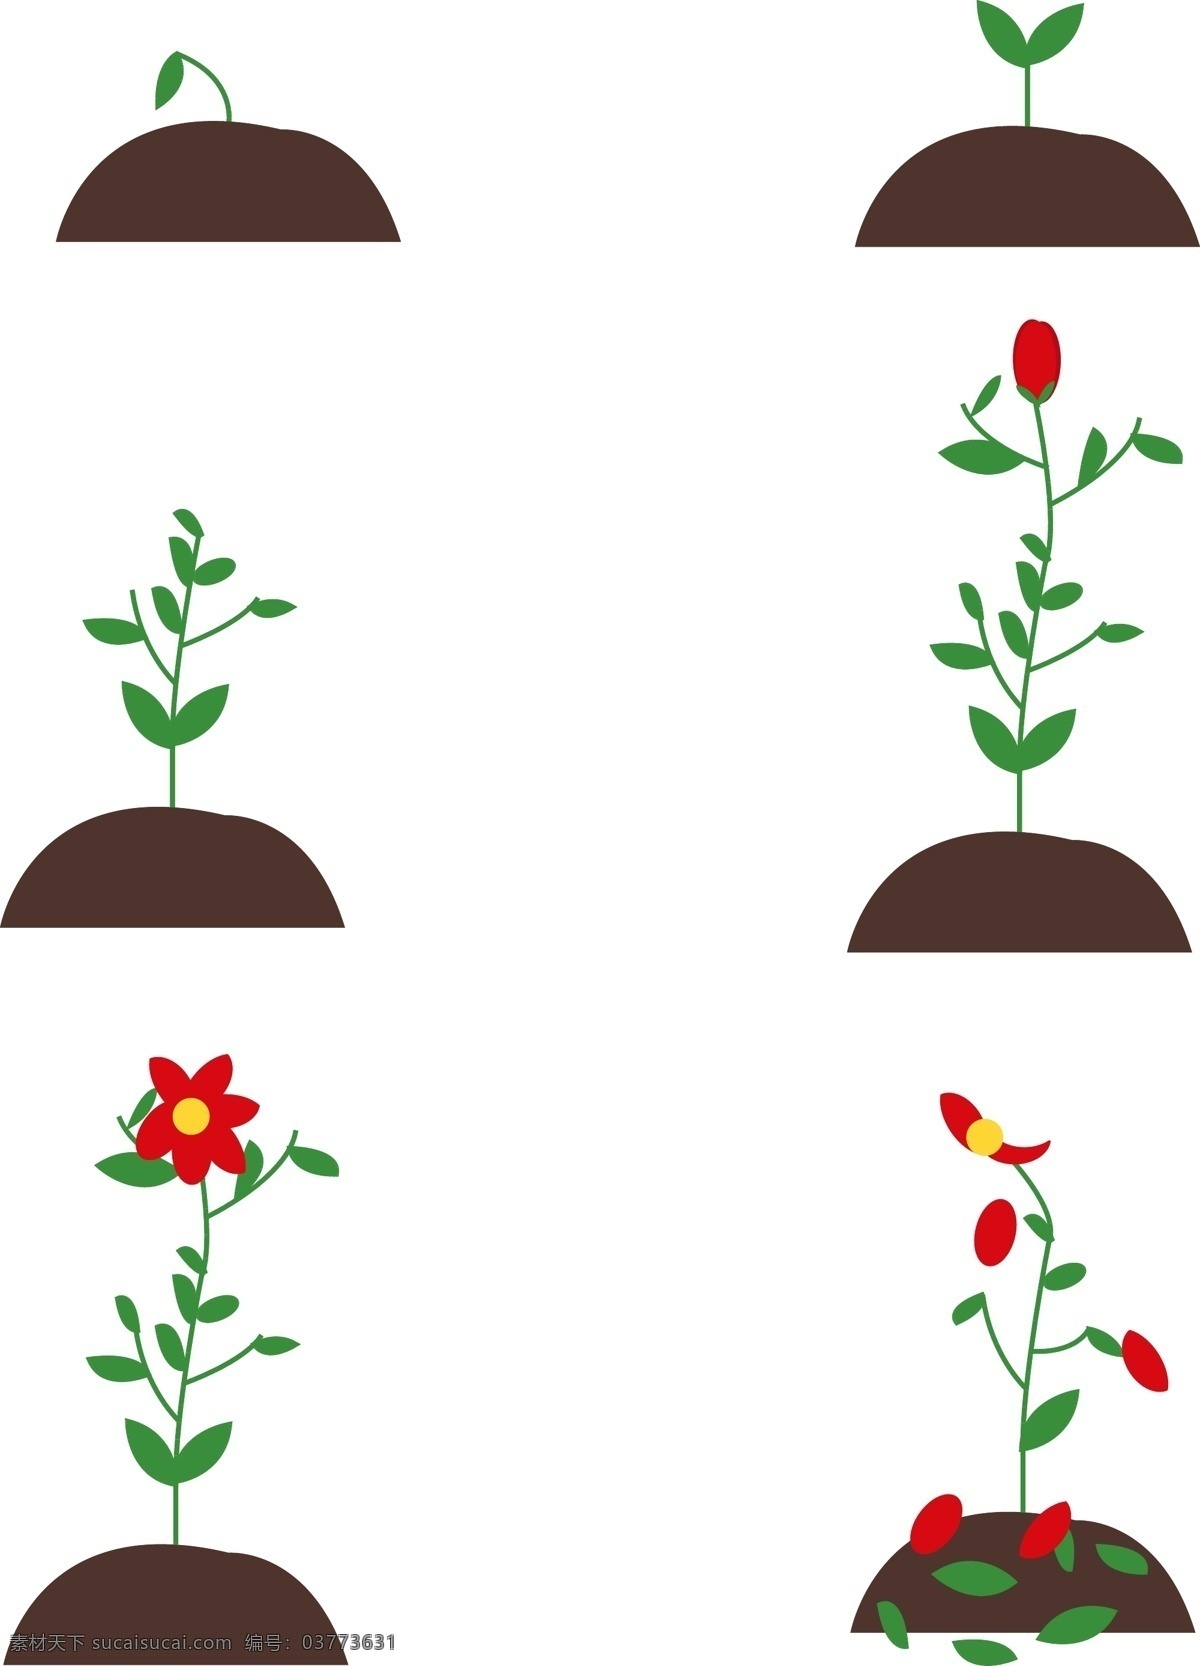 矢量 简约 可爱 植物 花朵 生长 过程 植物生长过程 芽 花朵生长过程 花